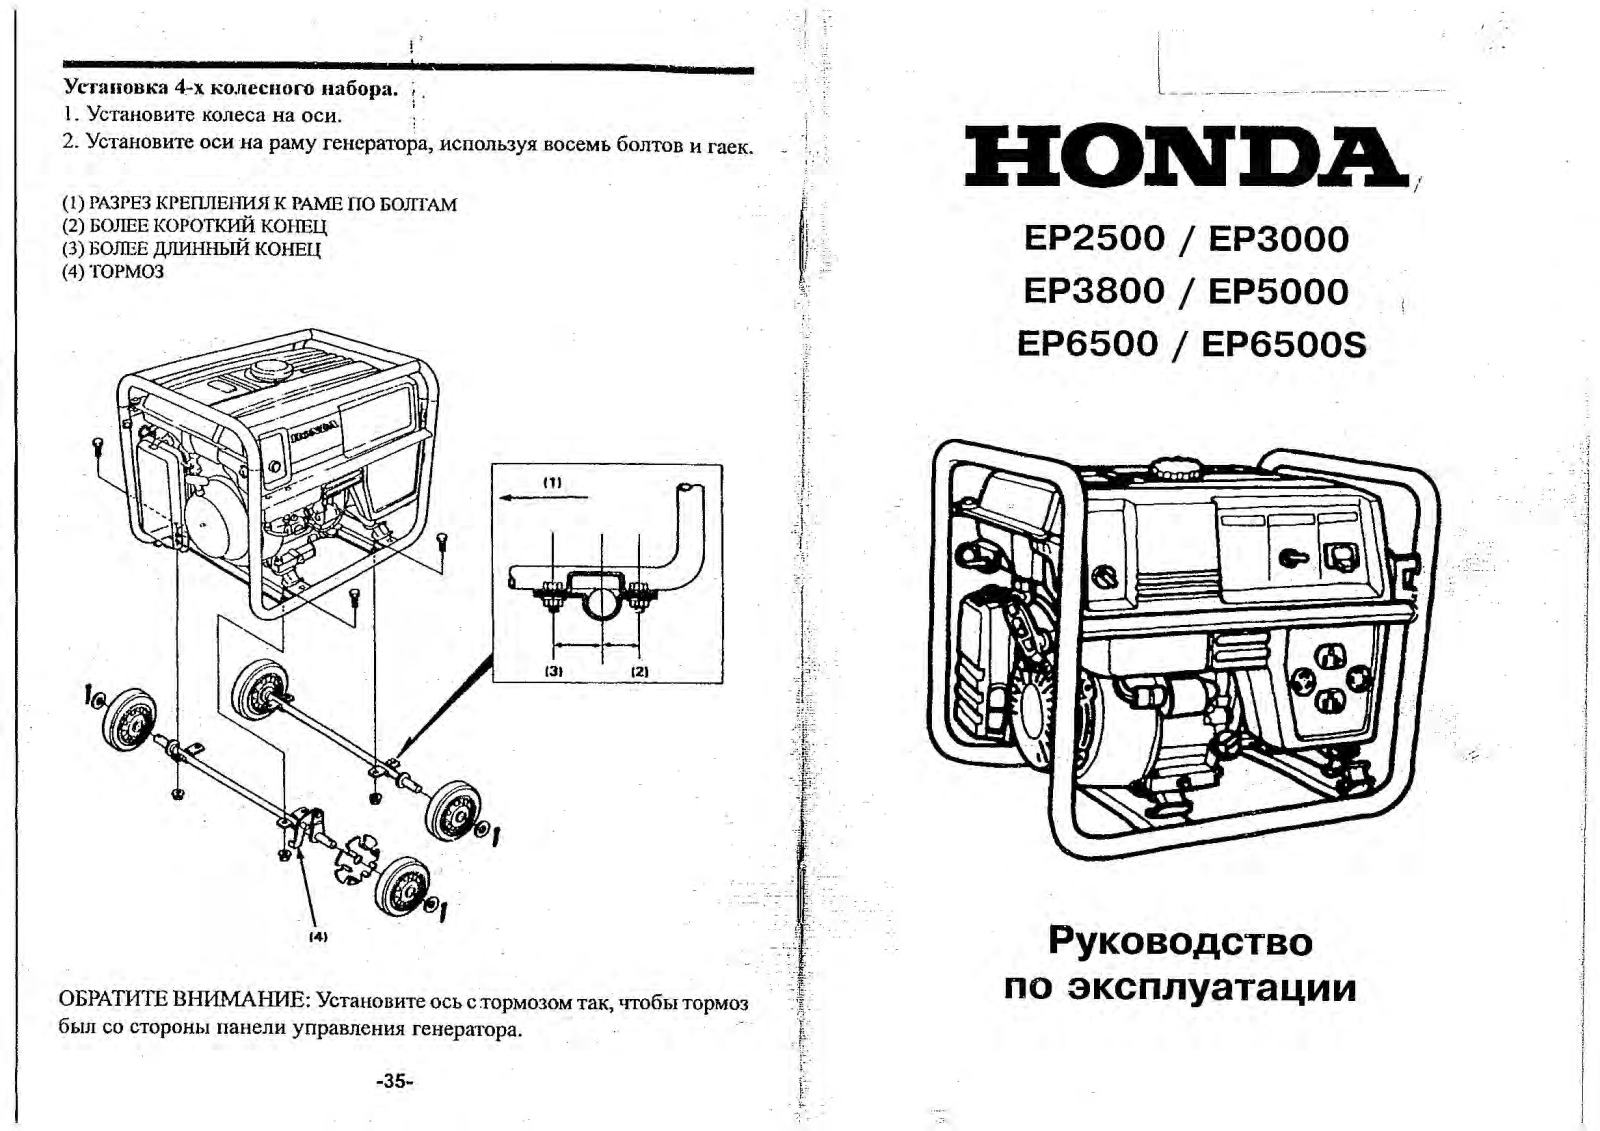 Honda EP6500 User Manual